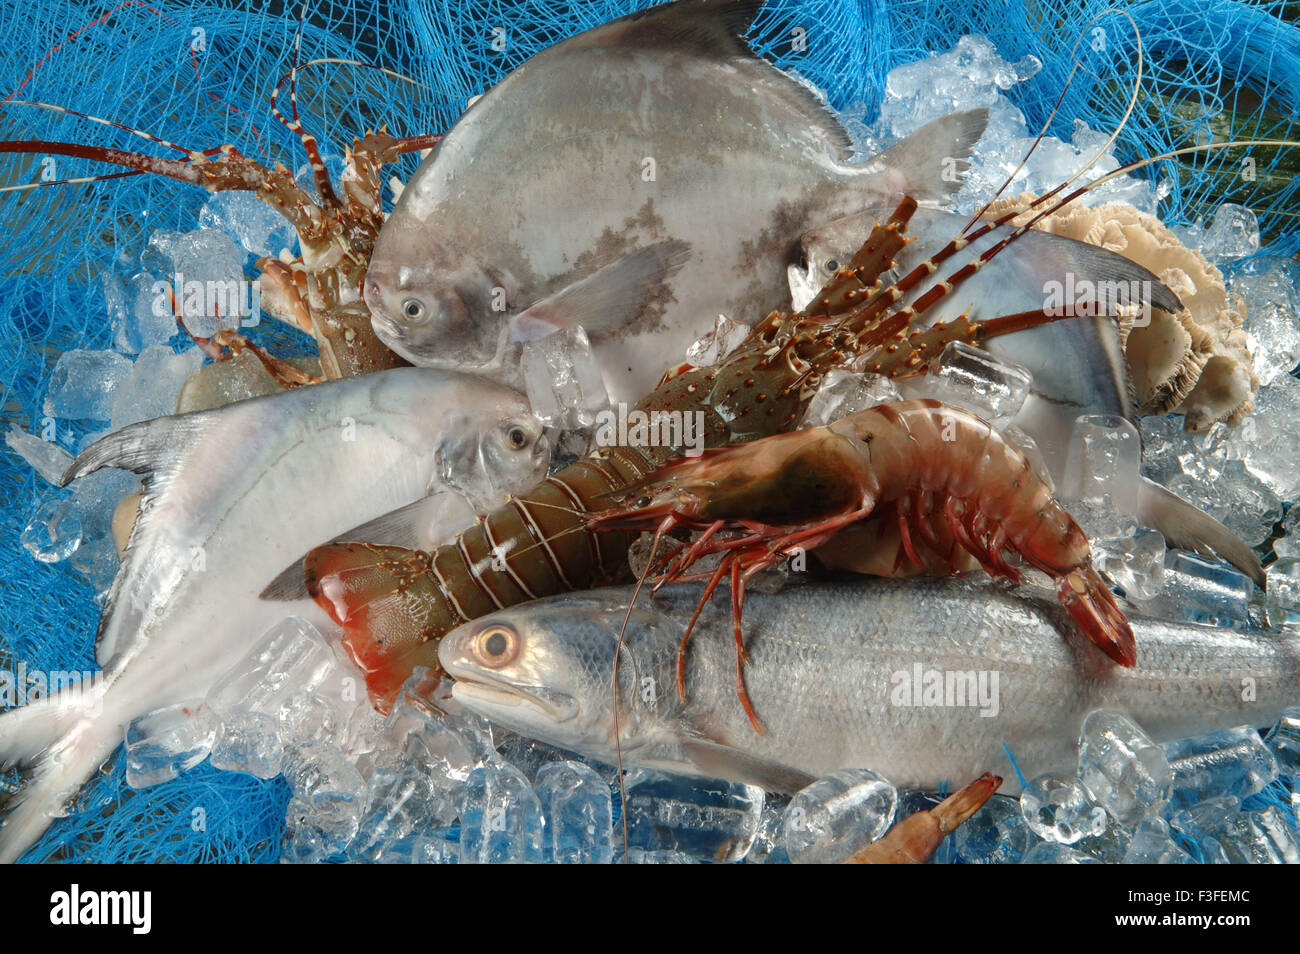 Non végétariens ; fruits de mer ; poissons morts pomfret gambas homards Banque D'Images